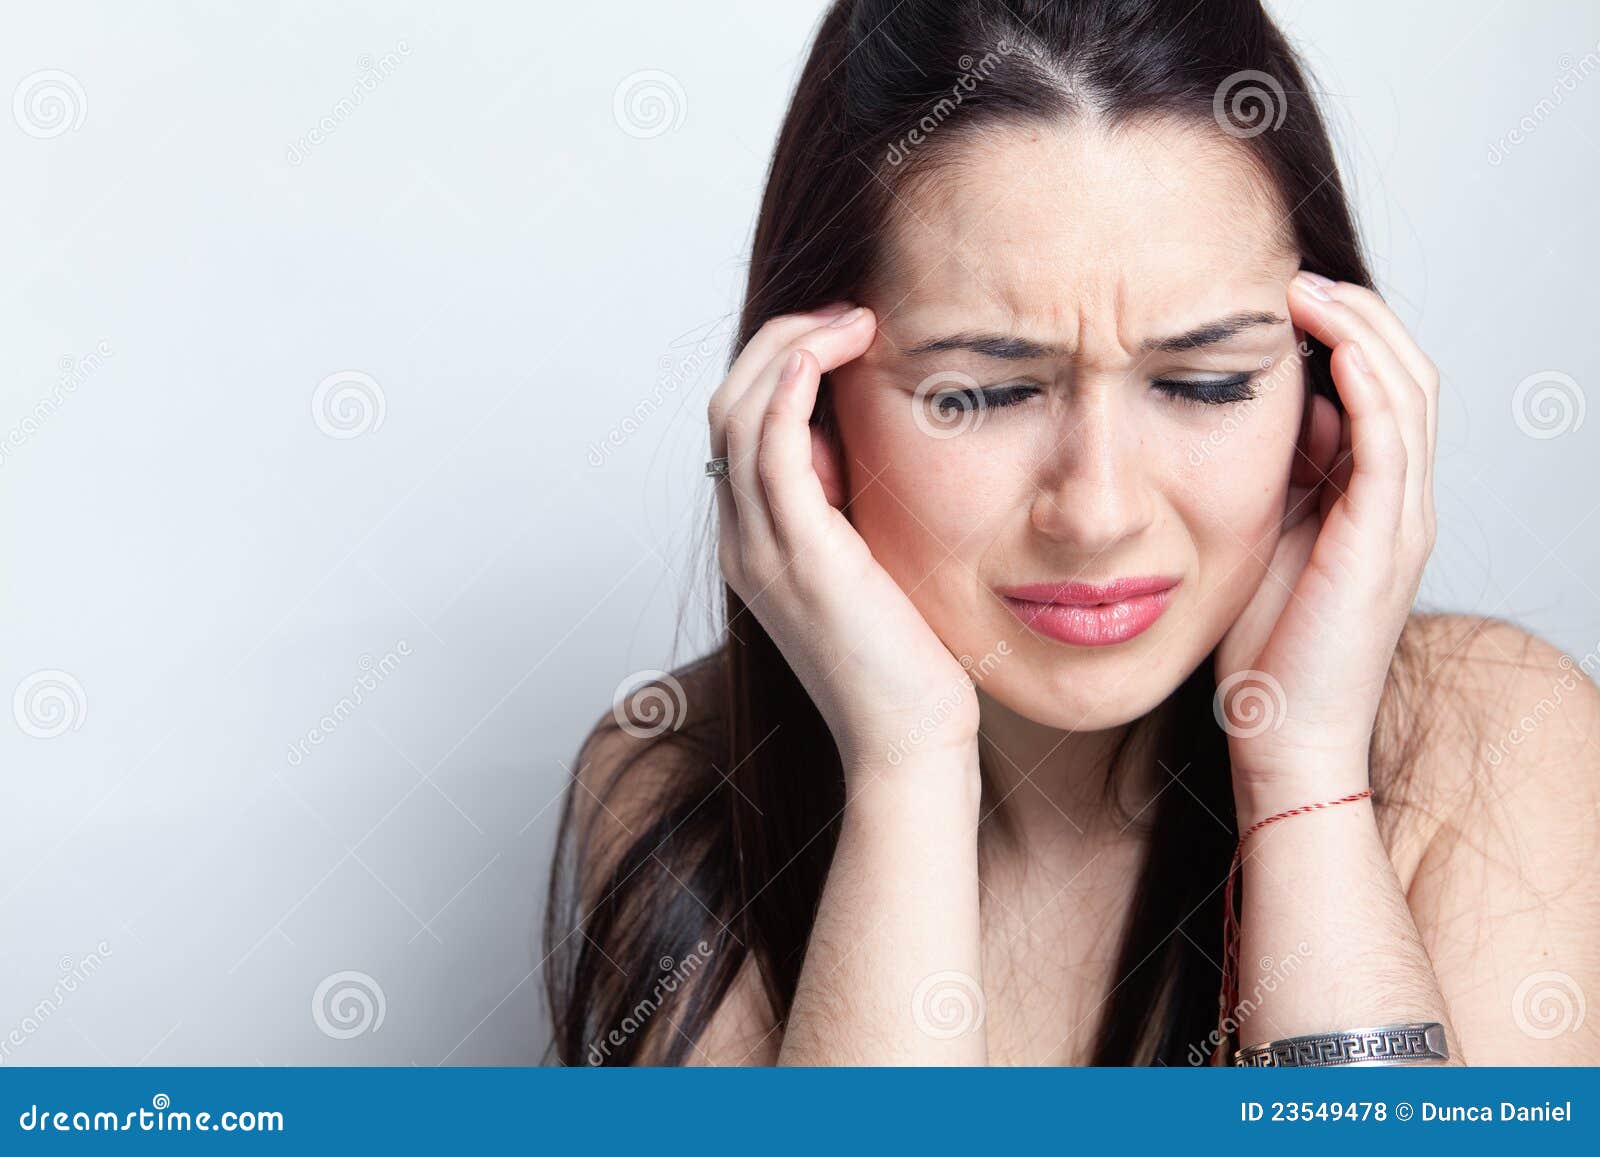 headache concept - woman suffering a migraine